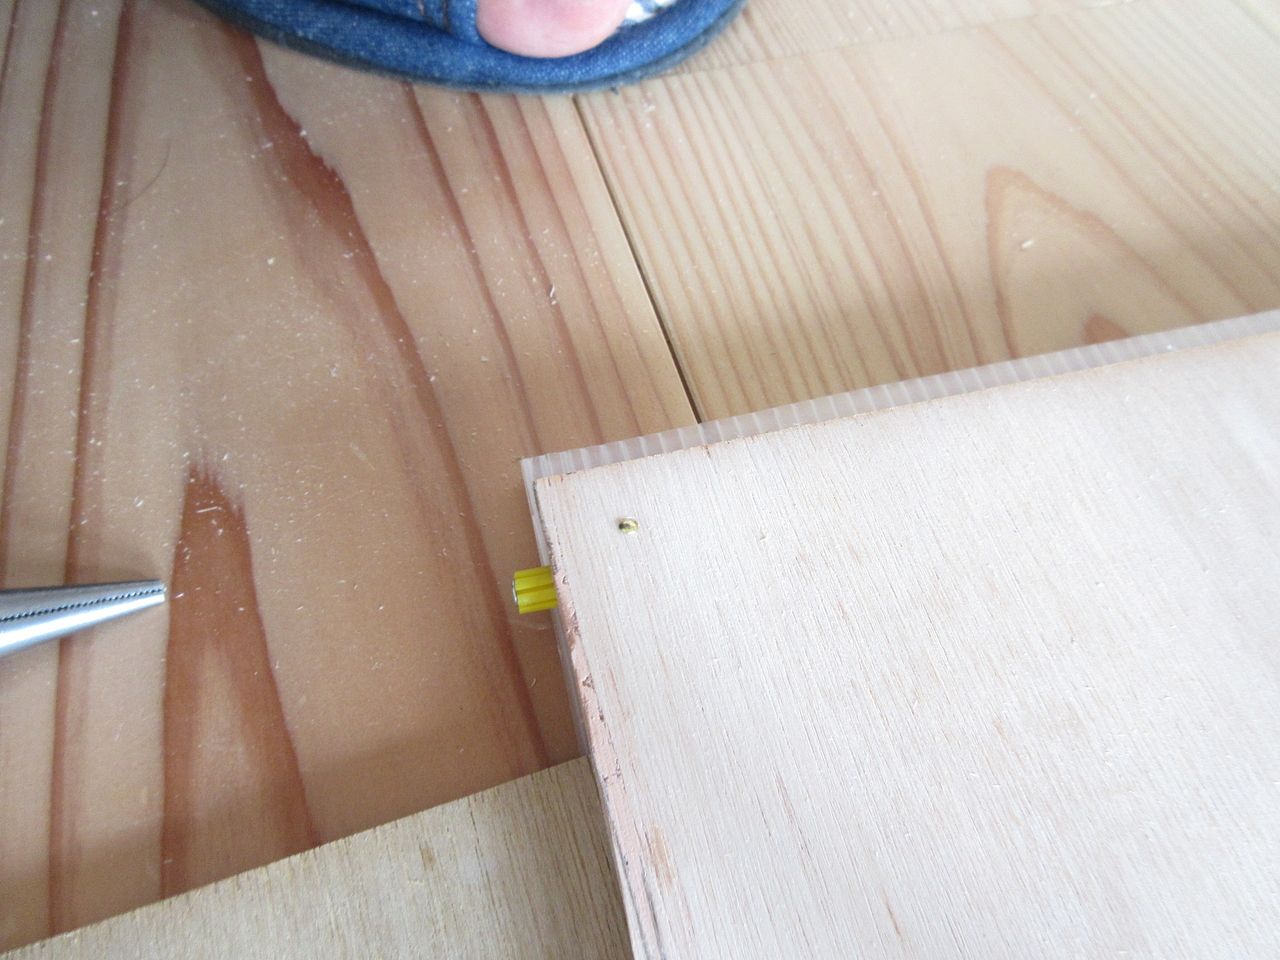 木枠材をベニヤ板に接着剤で固定しましたが、それだけではちょっと不安だったので仕上げ面に真鍮釘を打ち込みました。
この真鍮釘ですが、小さいので遠くから見る目立ちません。
しかし、近くで見ると意外と良い感じにベニヤ板と合っていて可愛らしく、ちょっとしたアクセントになっています。